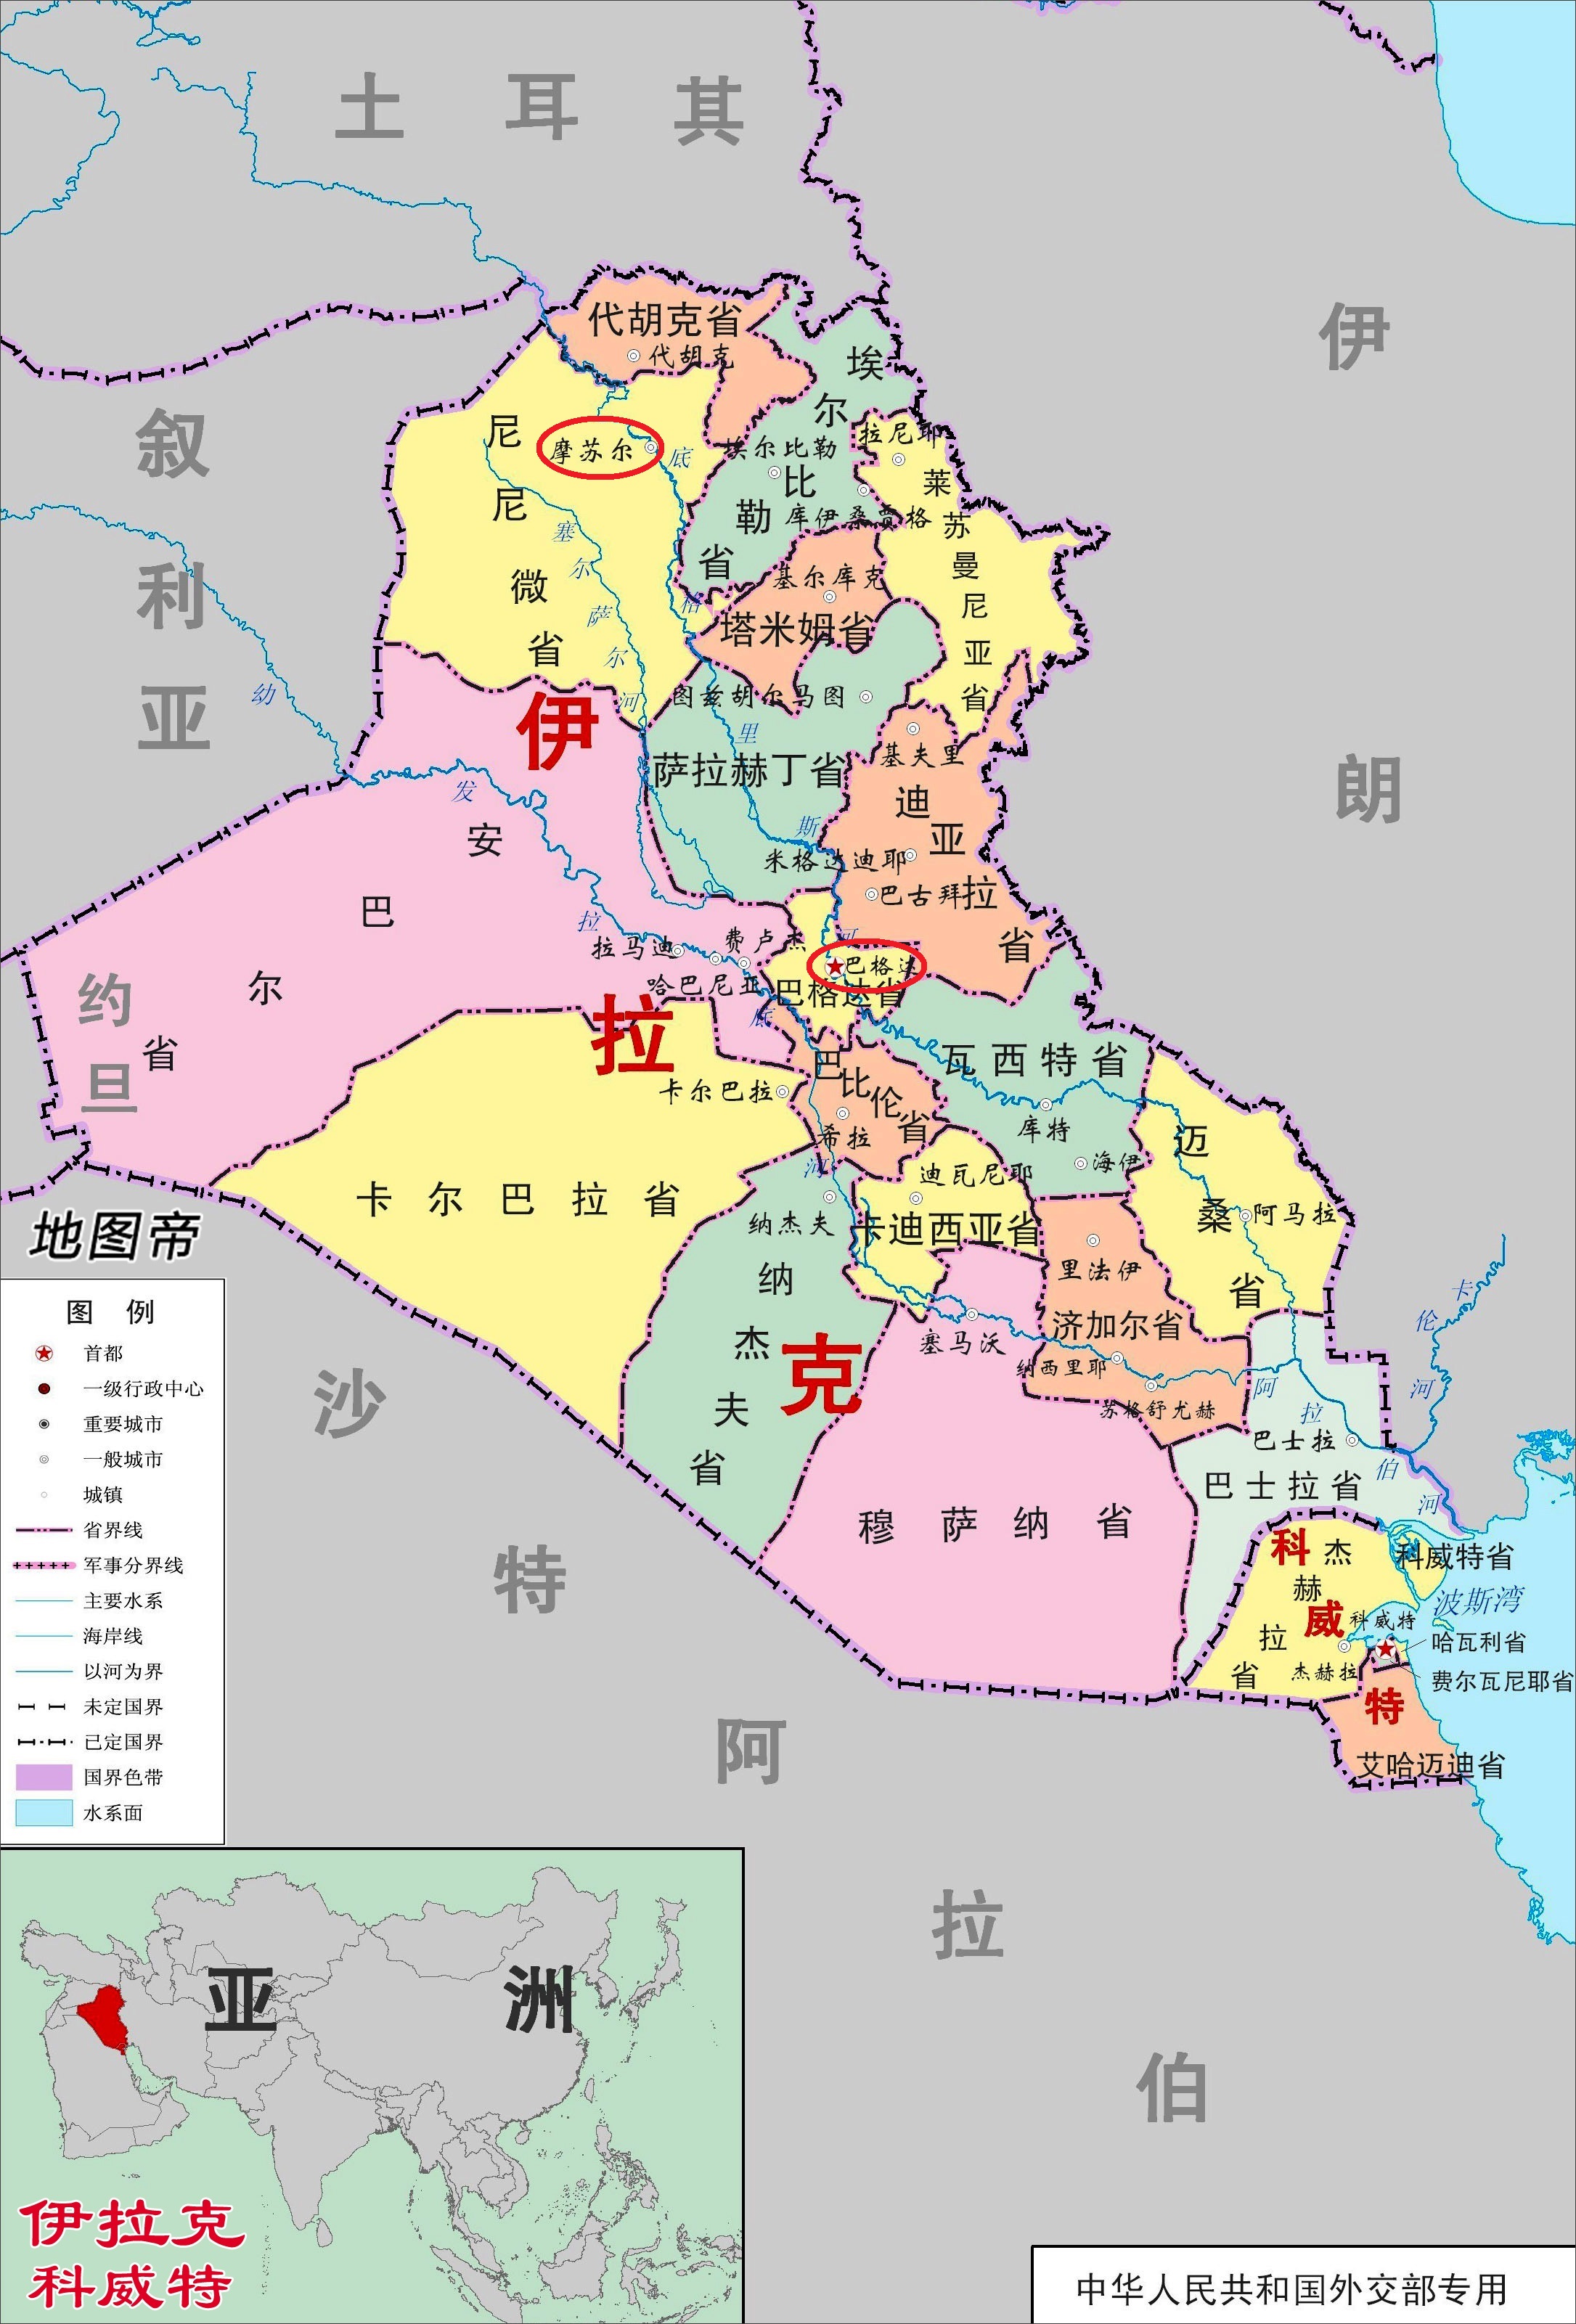 原创伊拉克的摩苏尔地区,为什么库尔德人那么多?